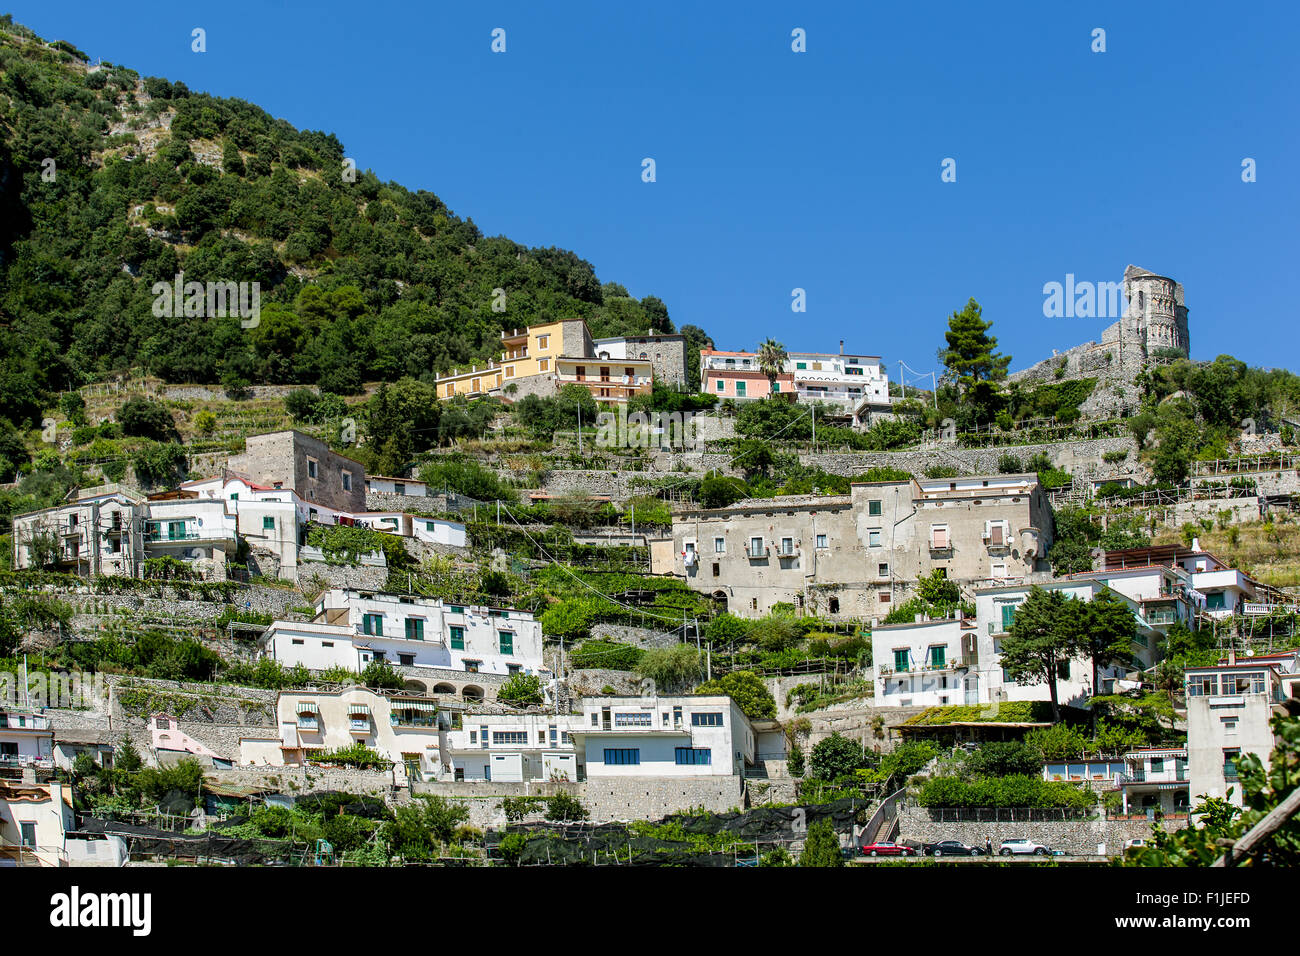 Village de Pontone et les ruines de la Basilique de Sant'Eustachio dans la province de Salerne, Italie Banque D'Images